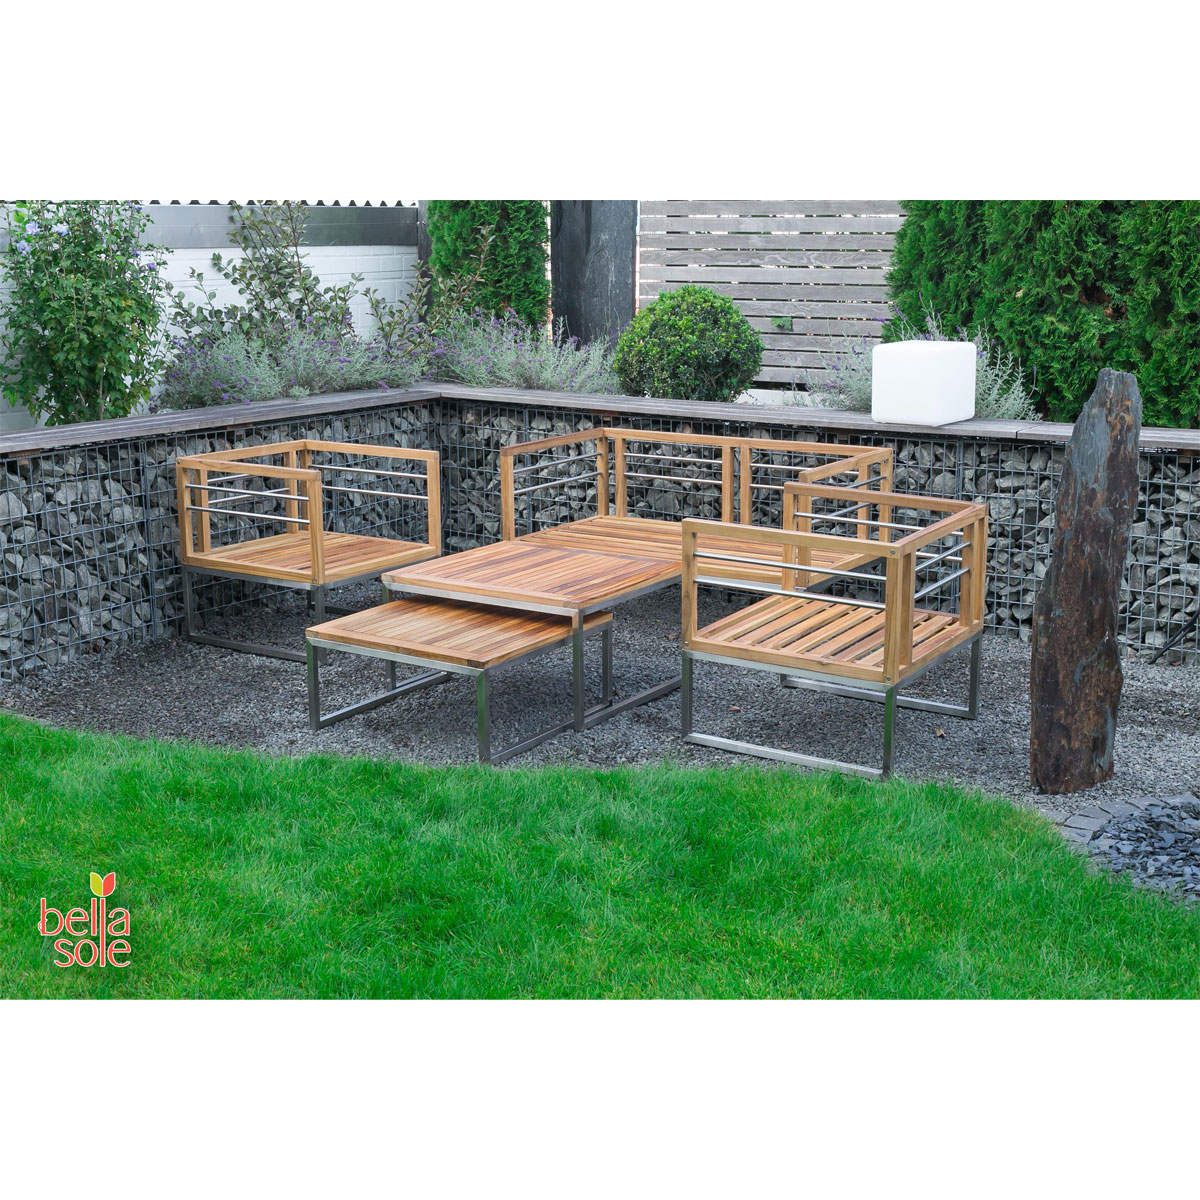 bellasole Gartenlounge-Set 4 Sitze und 2 Tische